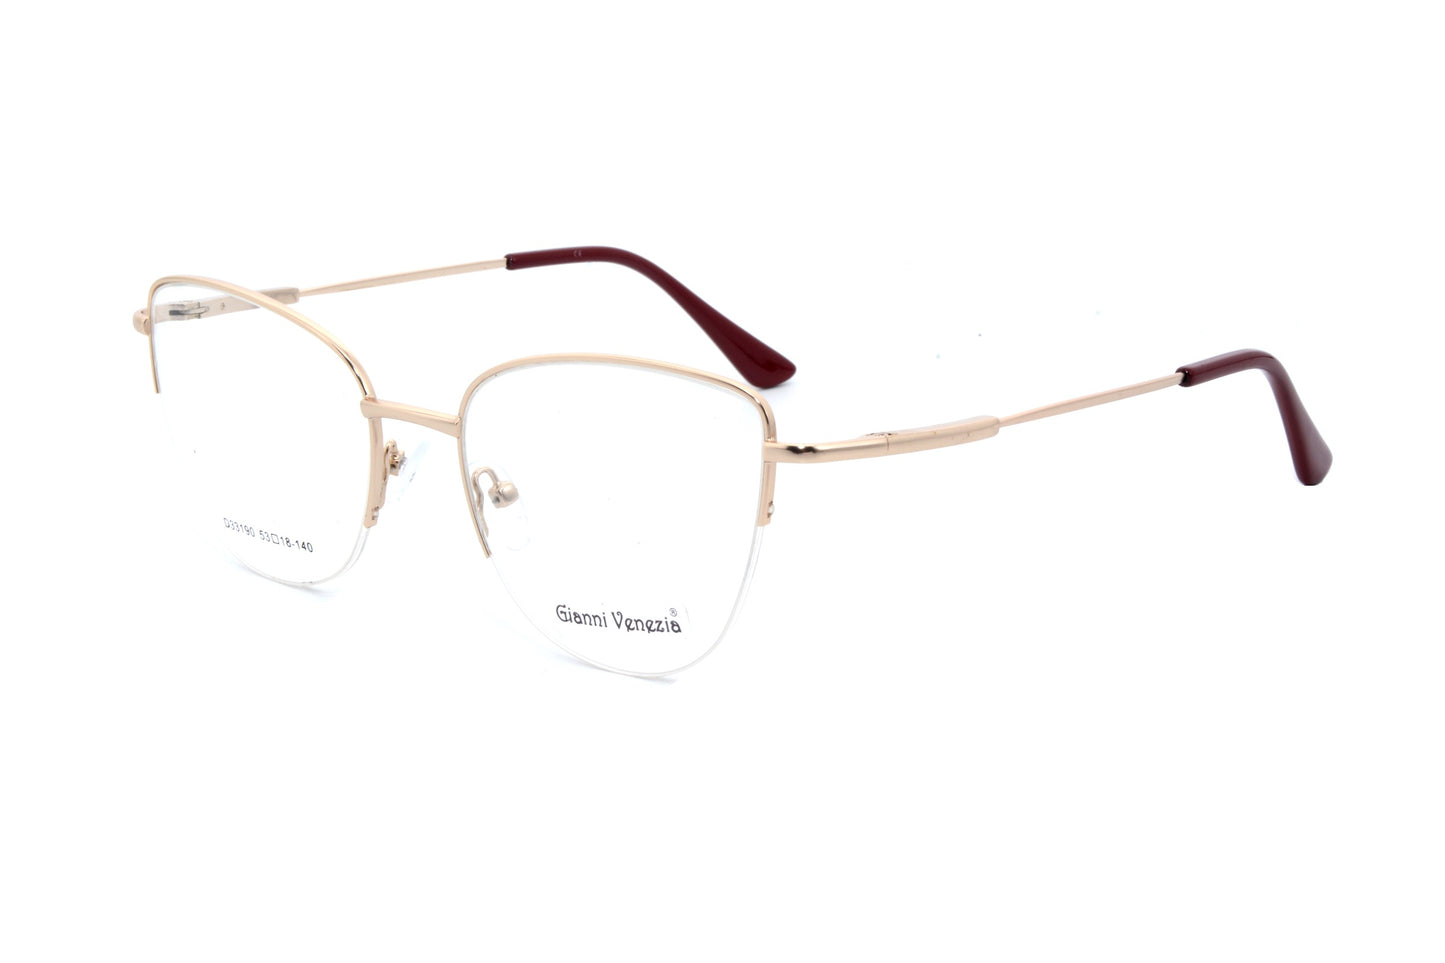 Gianni Vennezia eyewear 33190, C2 - Optics Trading